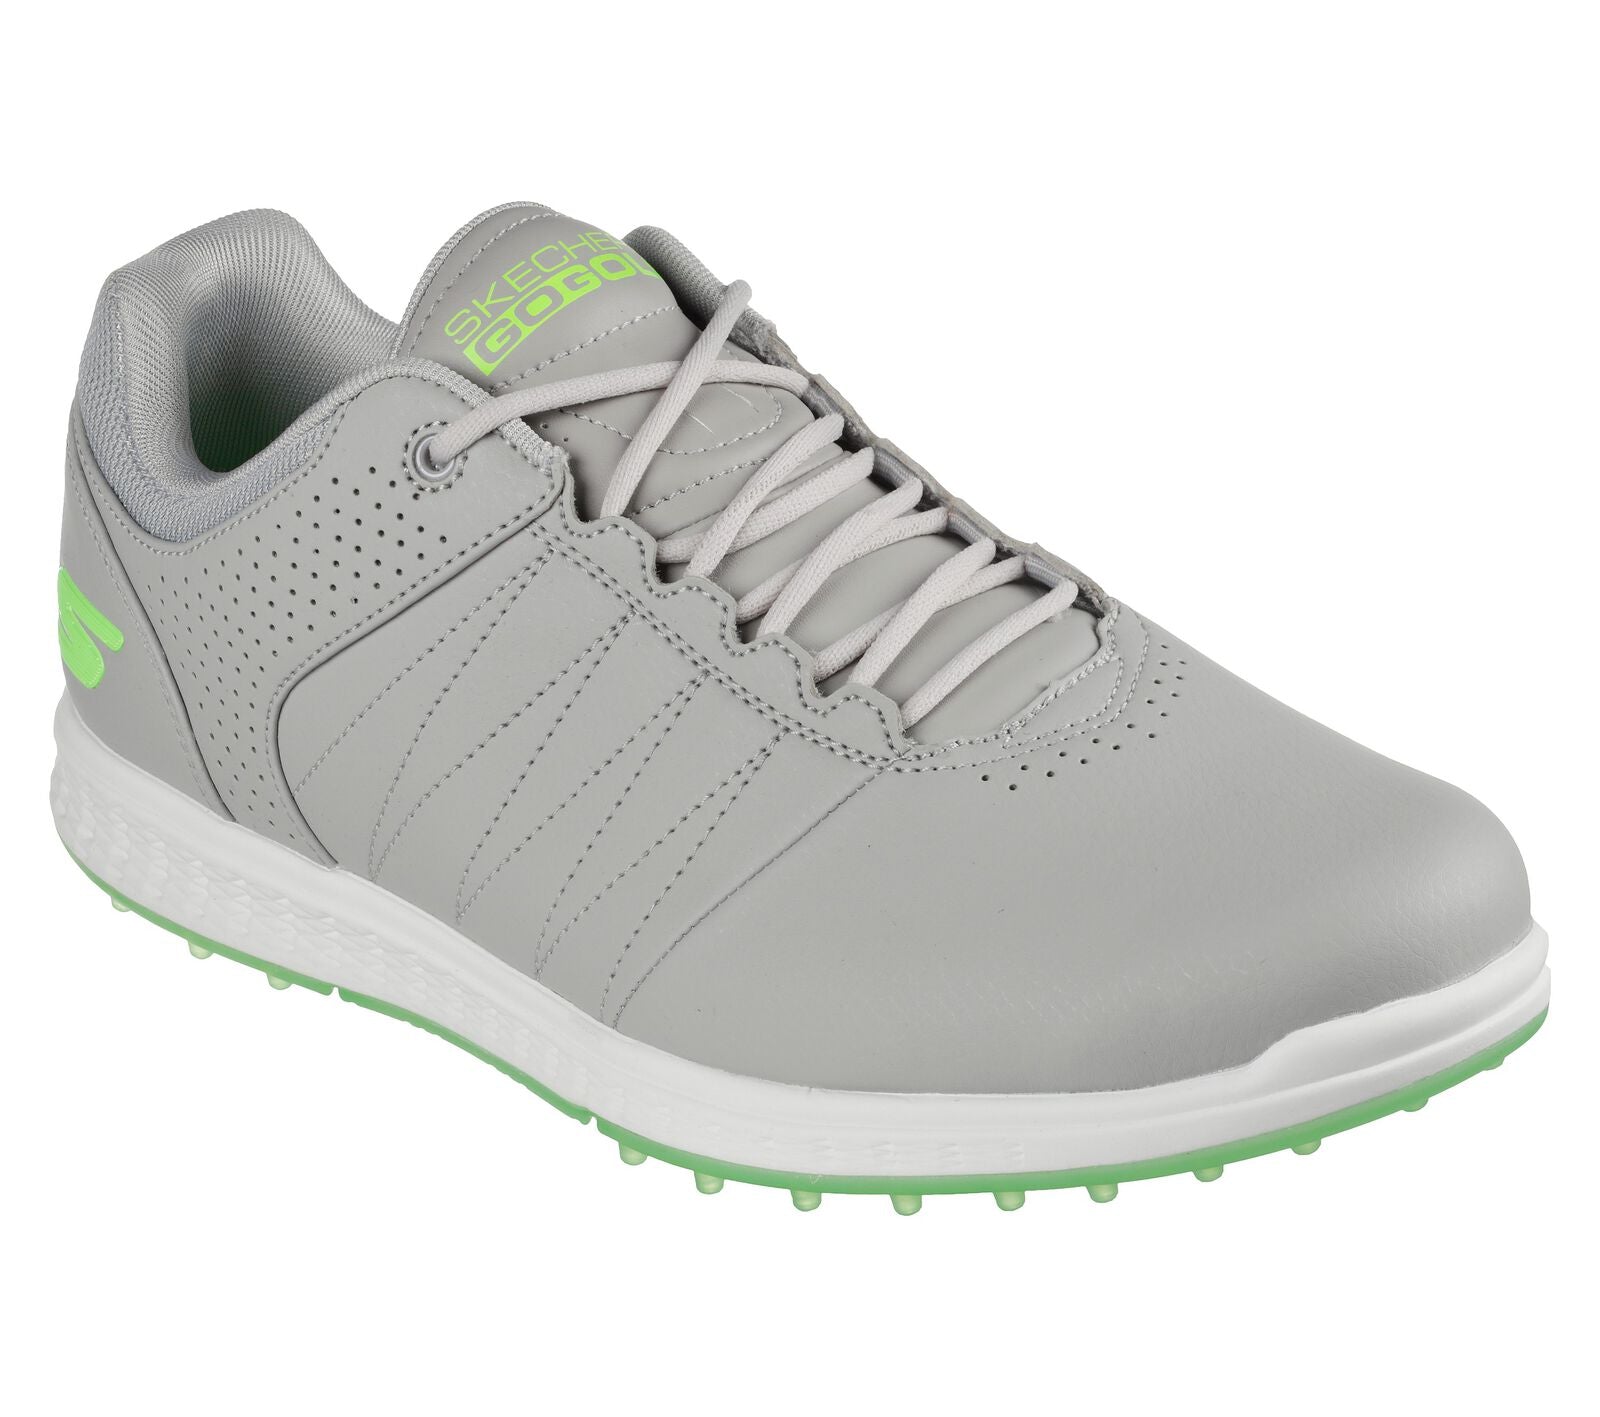 Skechers Mens 2022 Pivot Spikeless Ultra Lightweight Golf Shoes - 5454 -  Just Golf Online